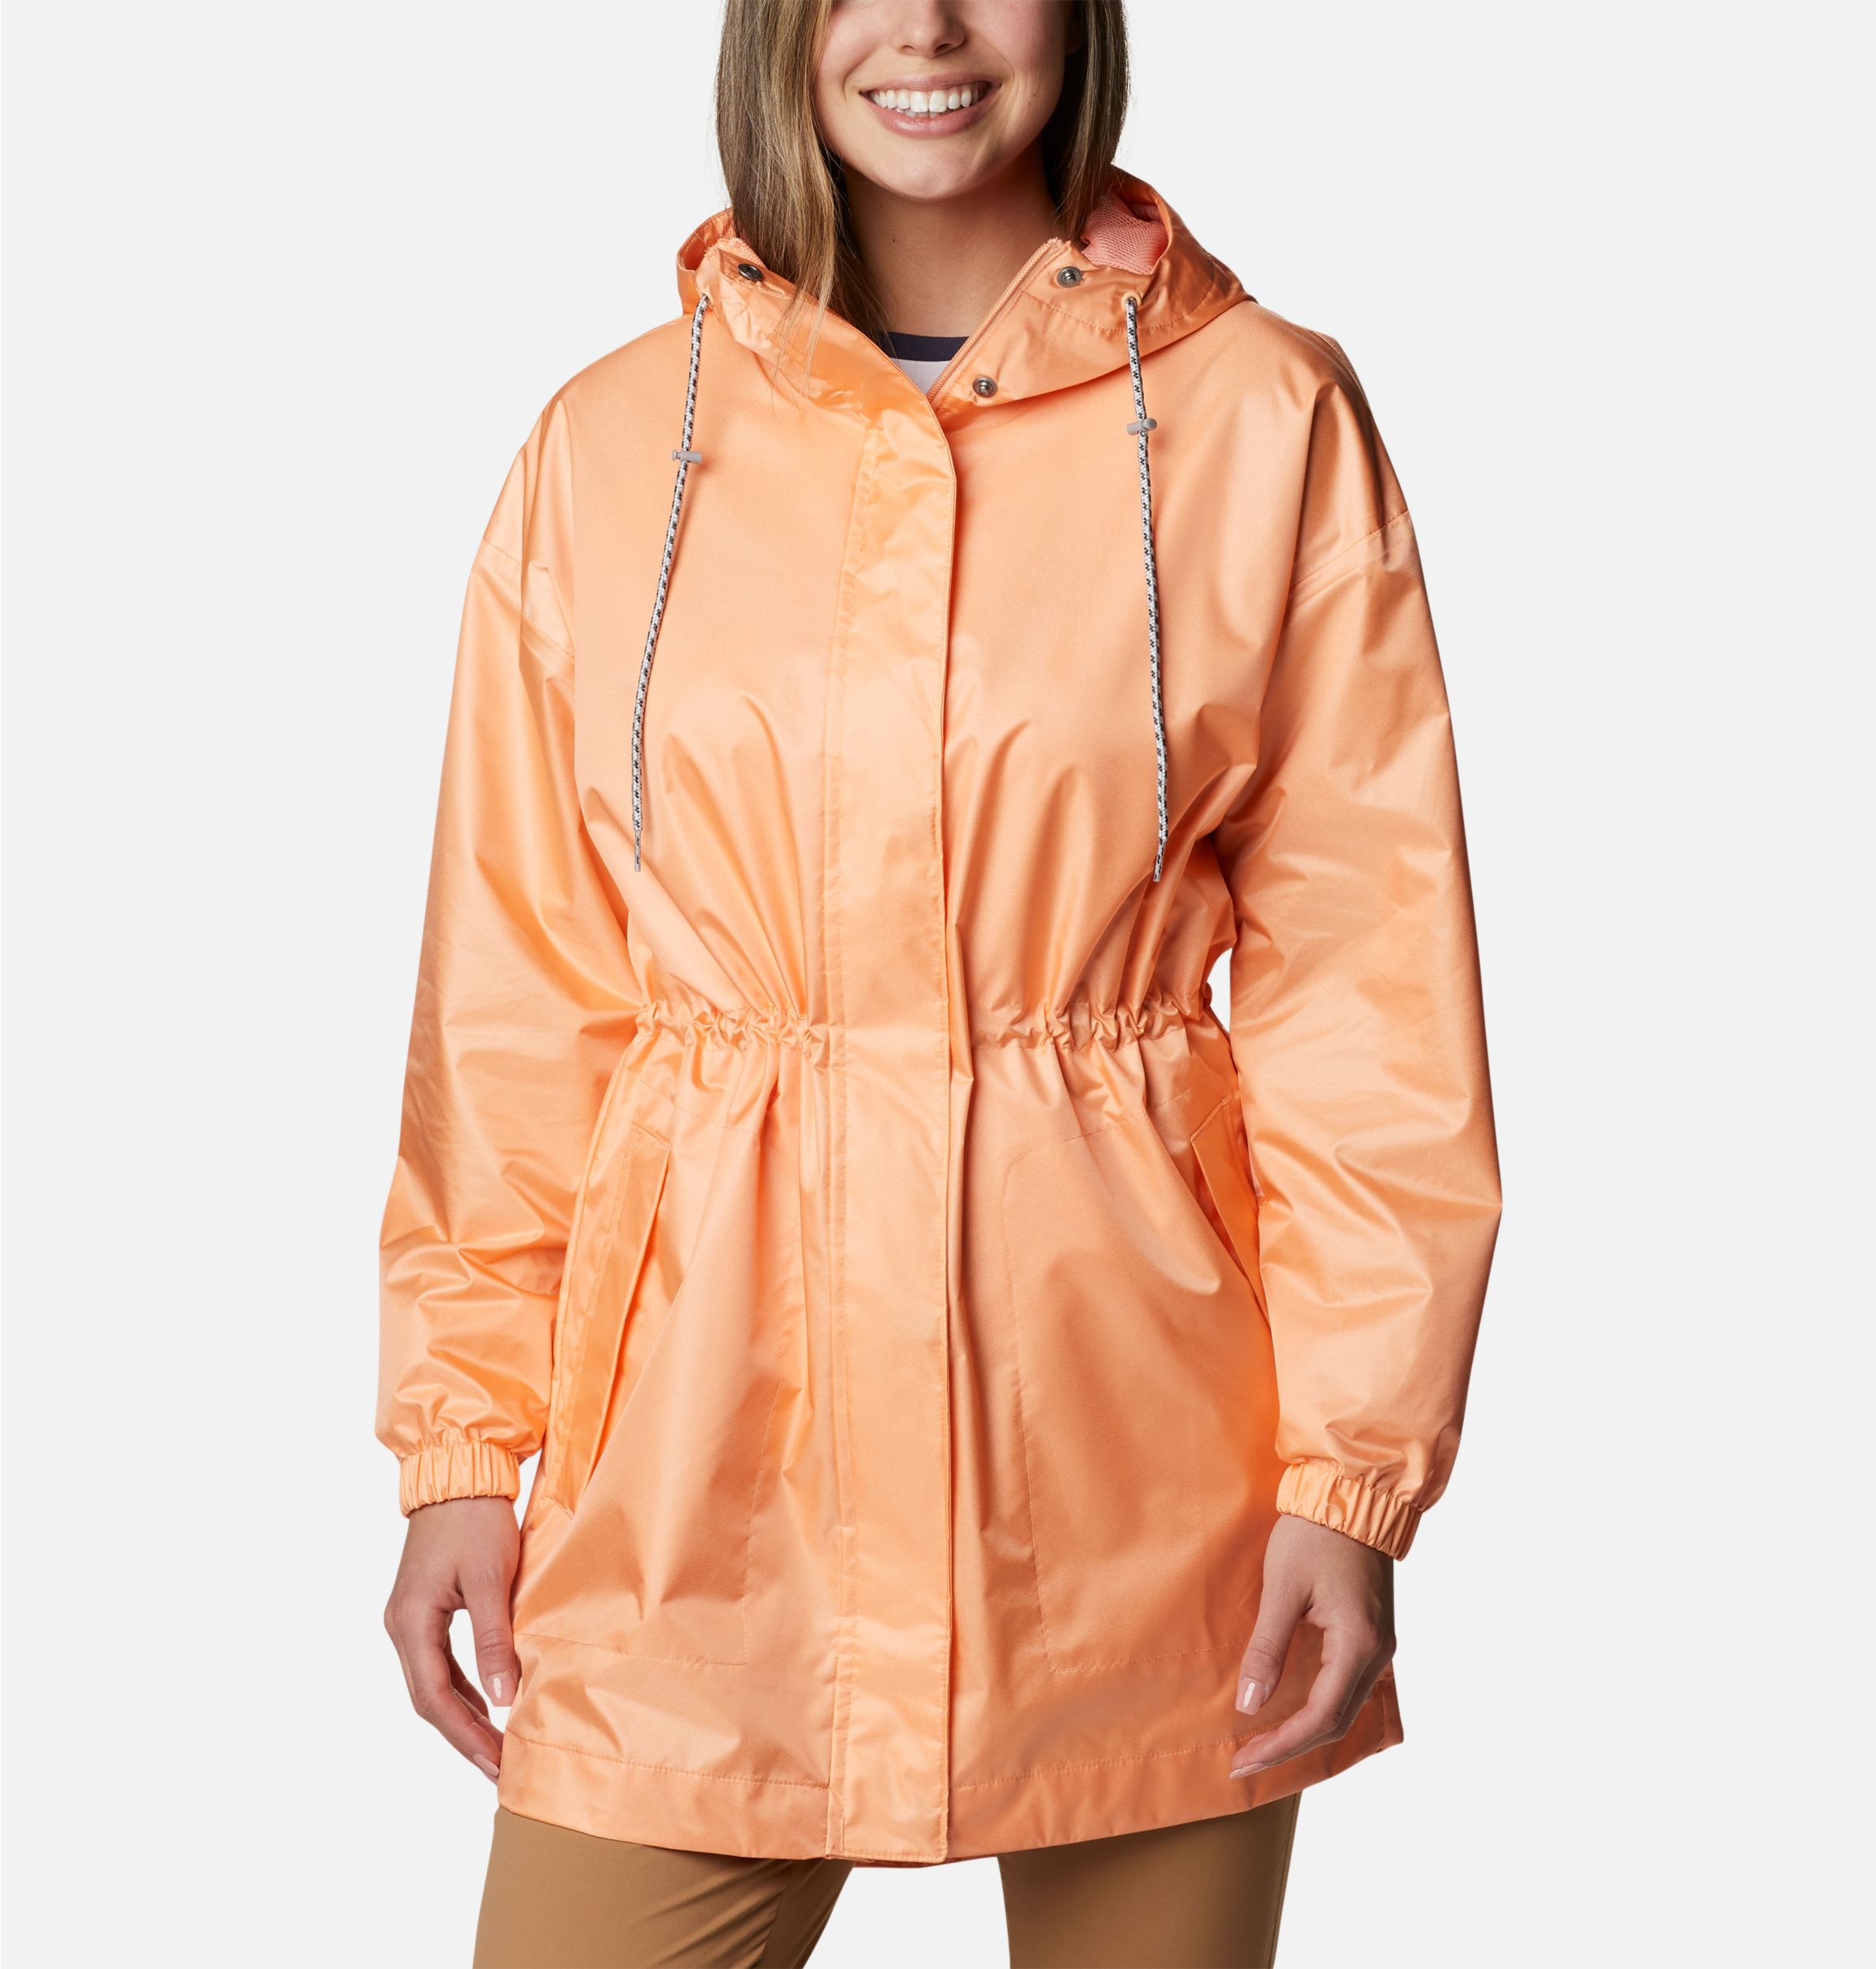 Women's Splash Side™ Waterproof Jacket | Columbia Sportswear